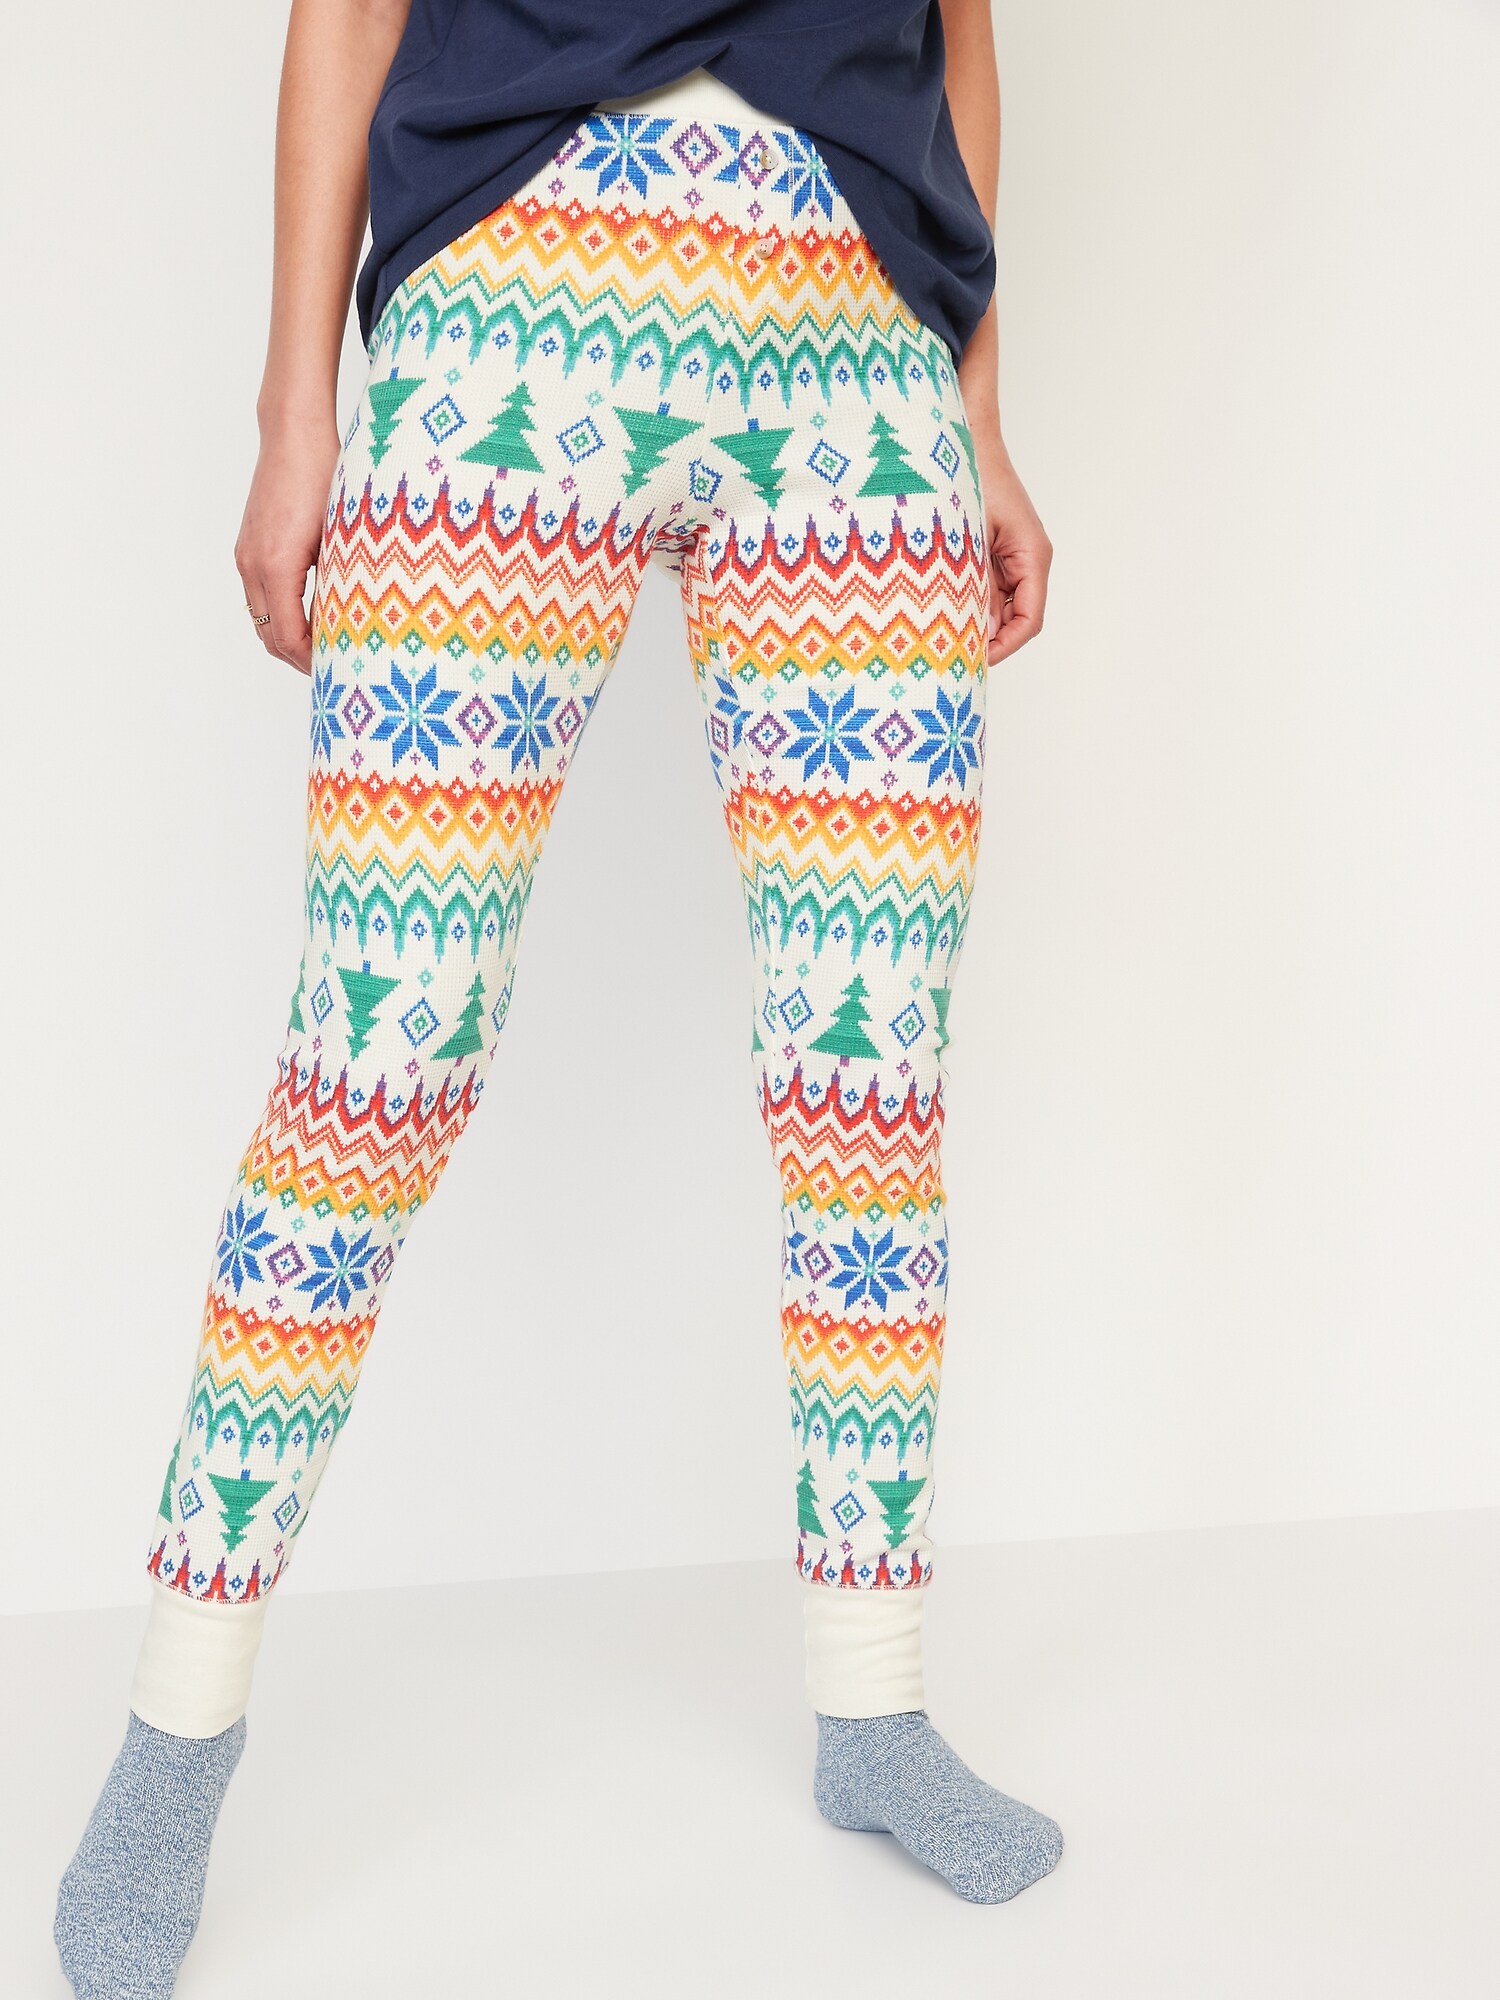 Matching Printed Thermal-Knit Pajama Leggings for Women